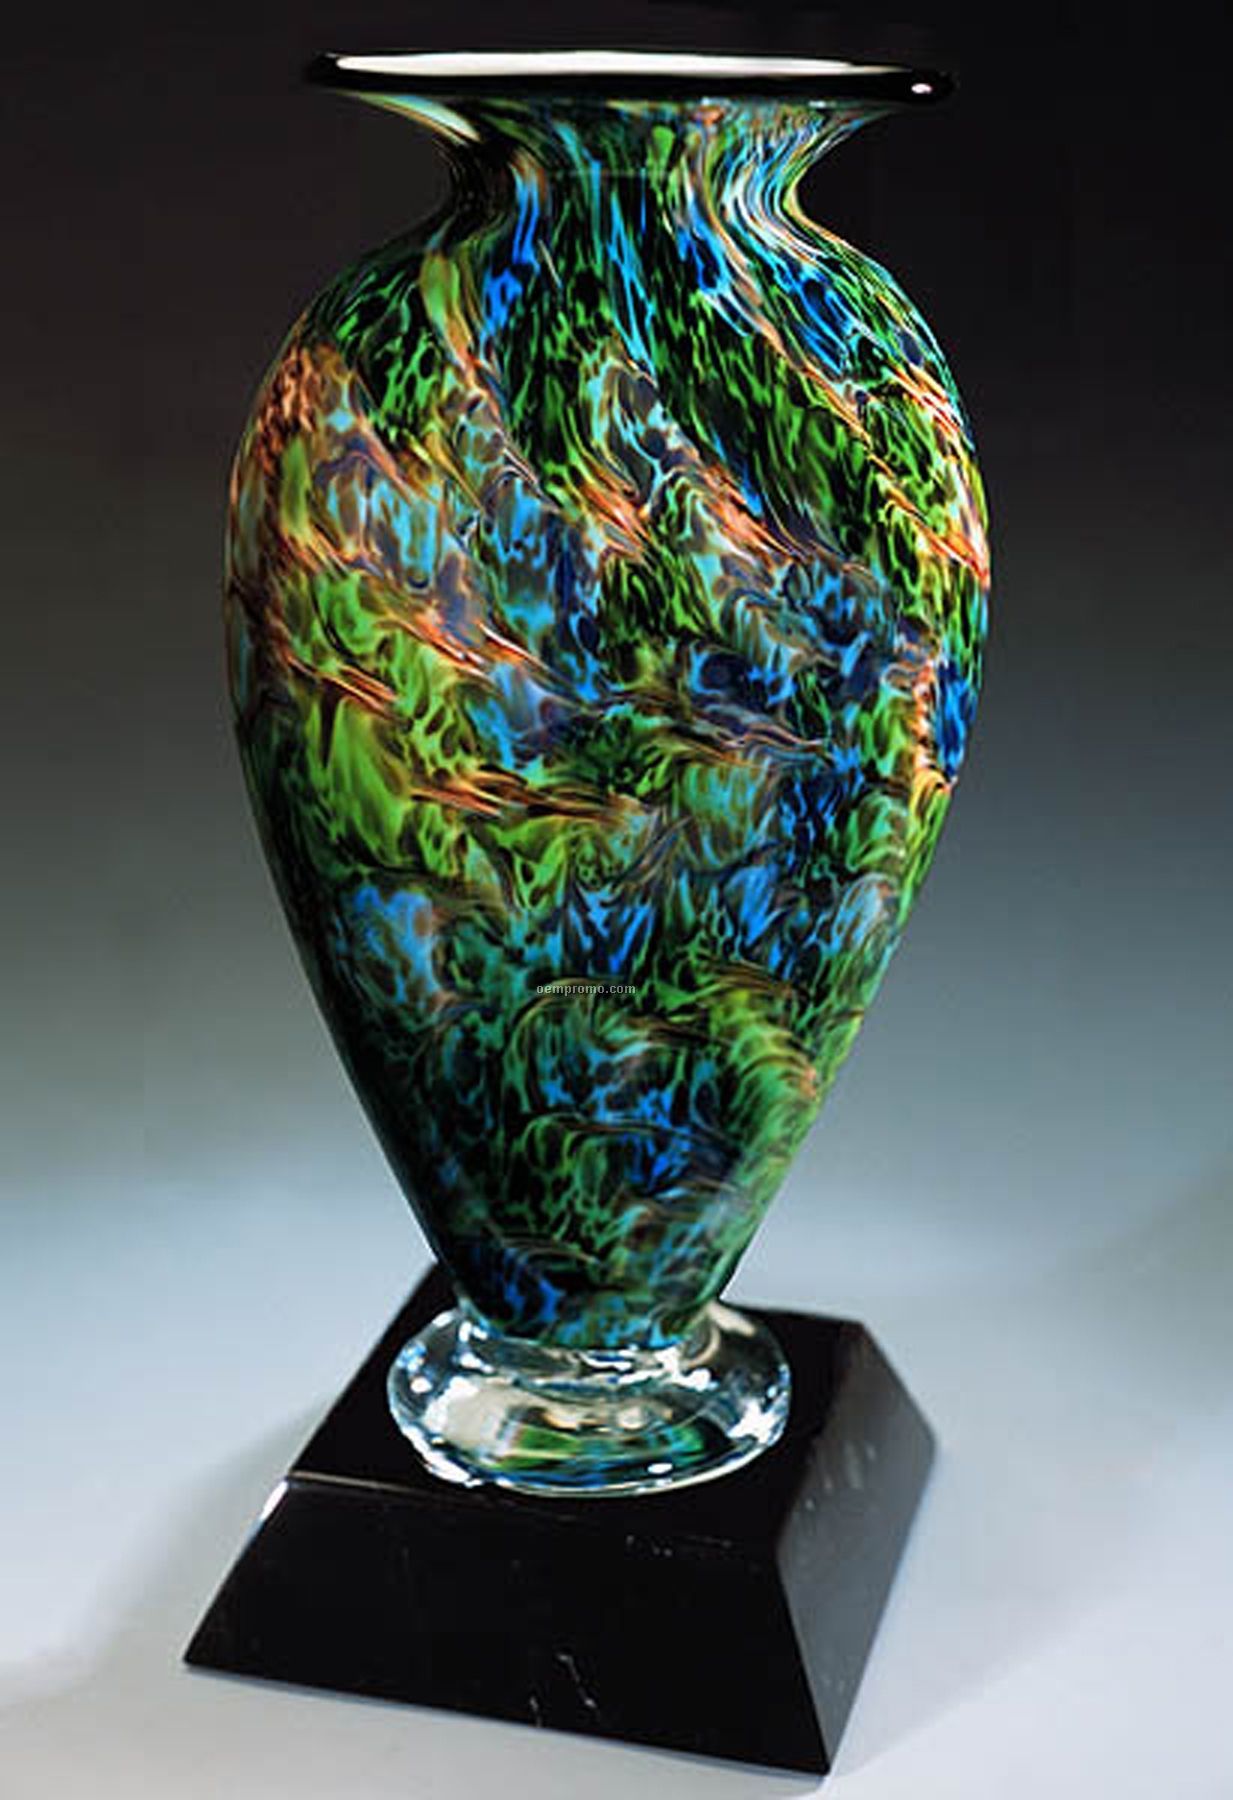 Jade Glen Mercury Sculpture Award W/O Base (3.75